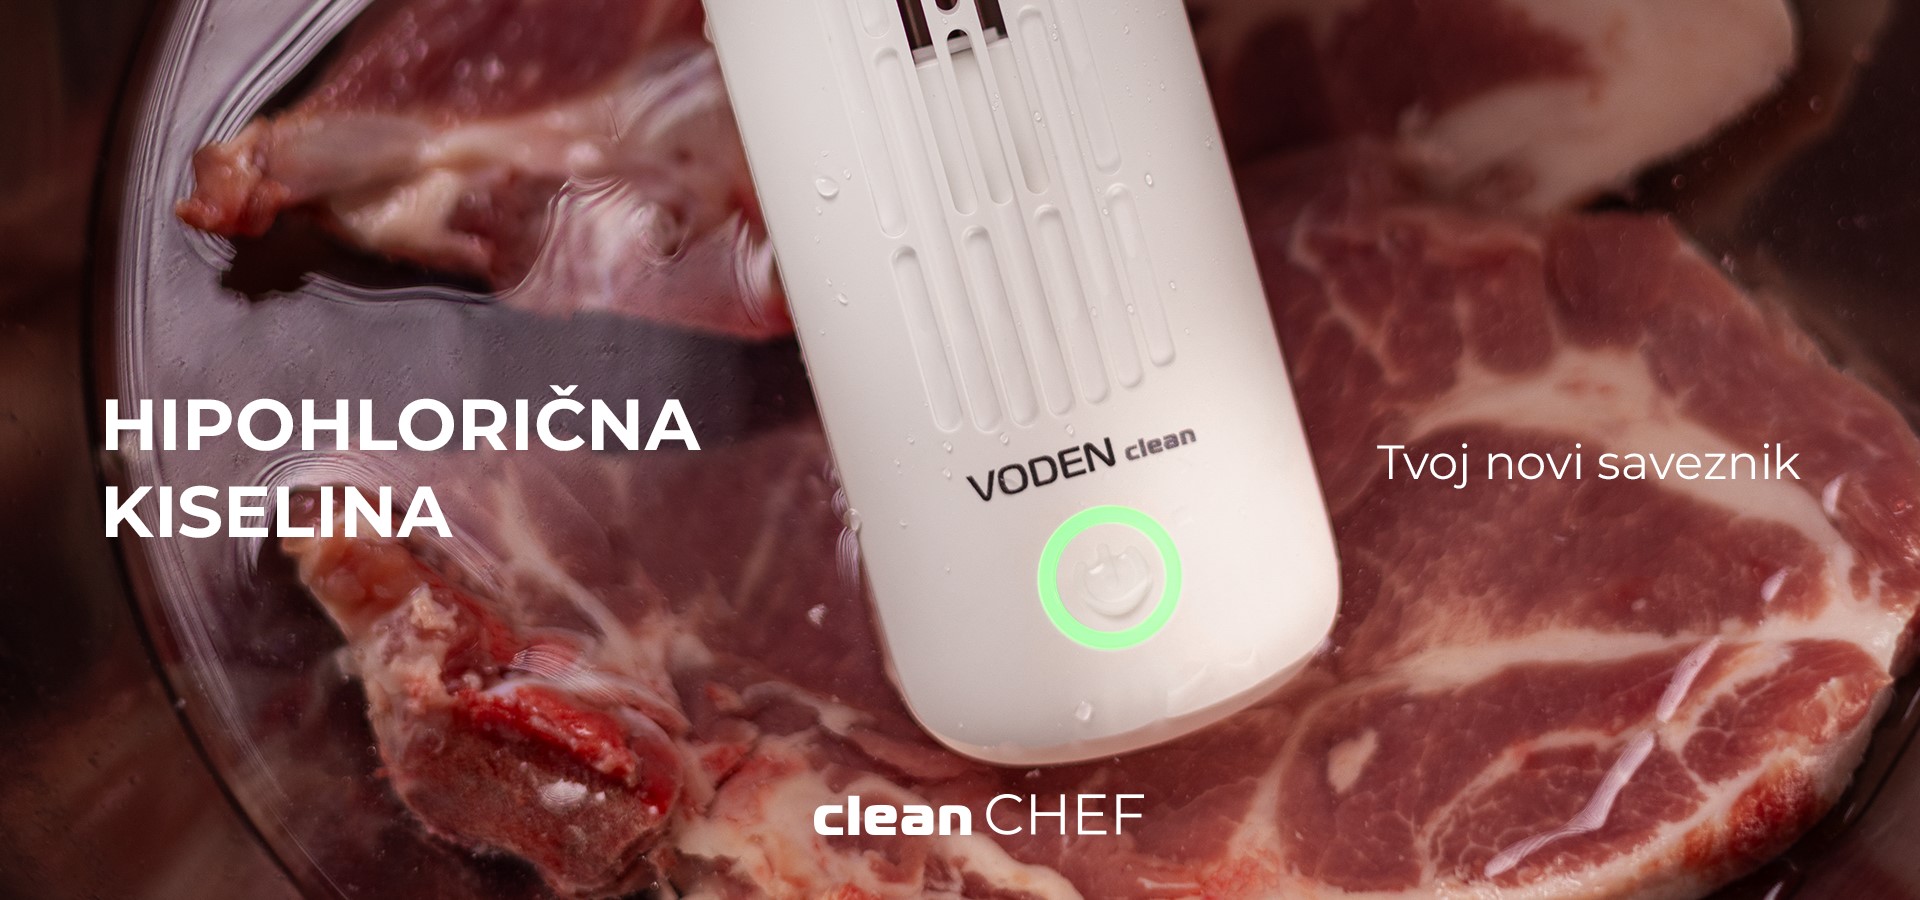 Voden Clean Chef smart sterilizator namirnica landscape 3